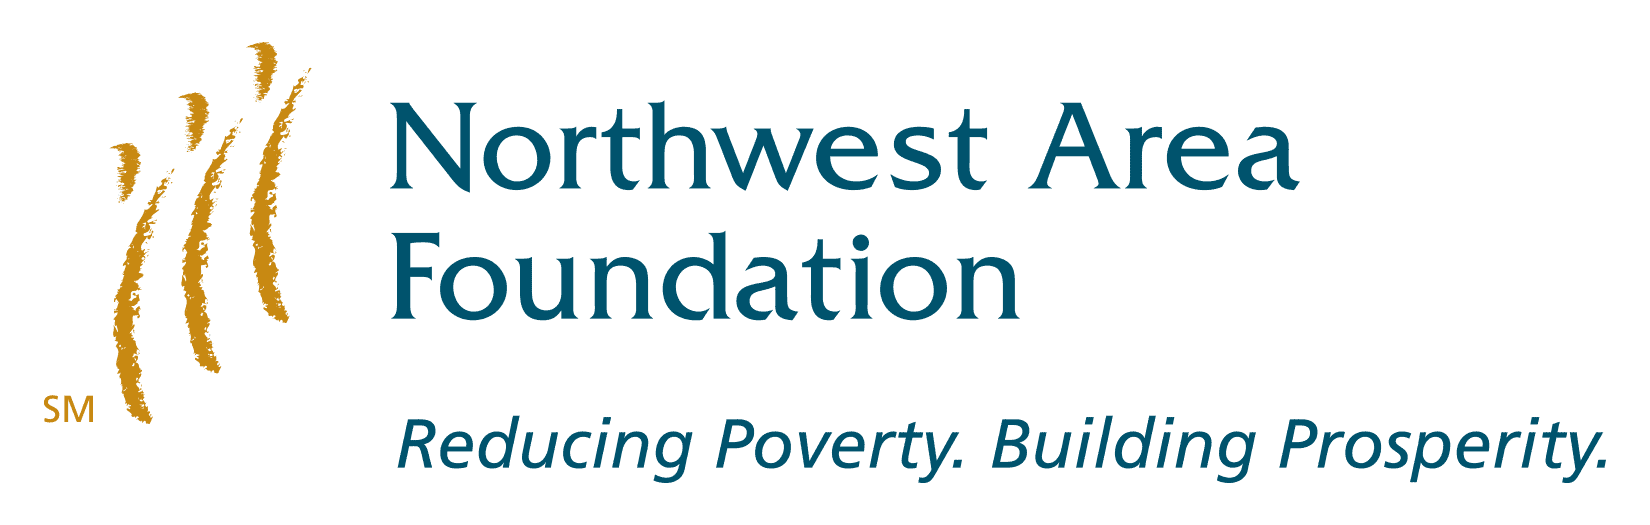 northwest-area-foundation-logo